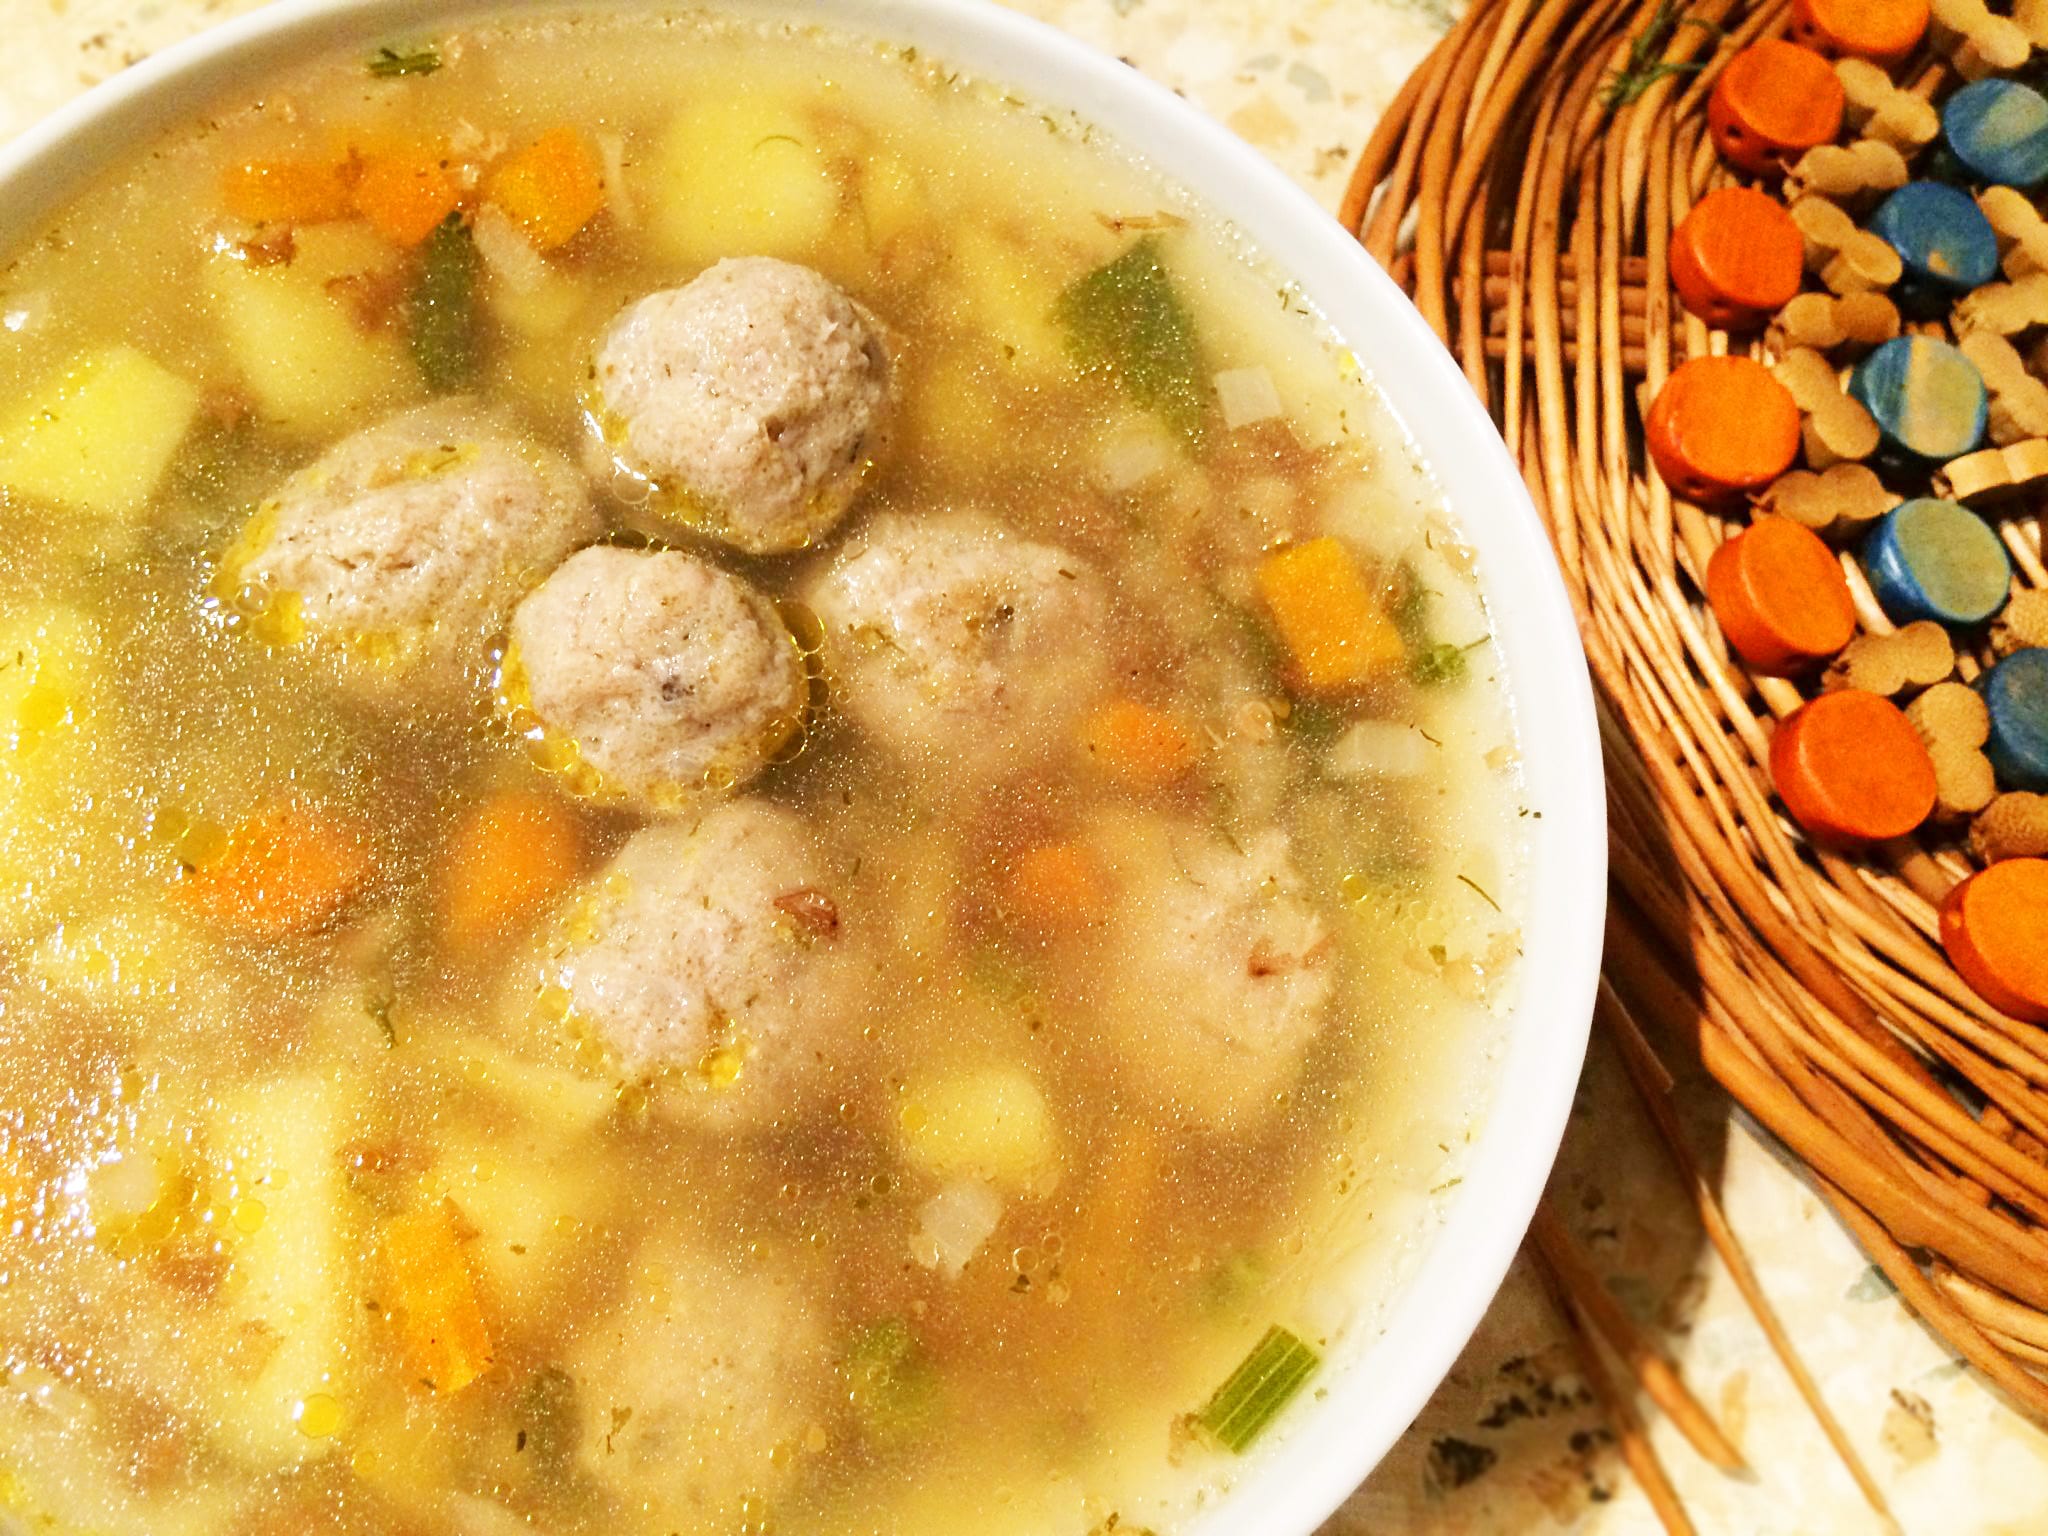 Суп из тыквы со сливками, курицей, морковью, сельдереем: пошаговый рецепт быстро и вкусно тыквенного супа для похудения и ребенка